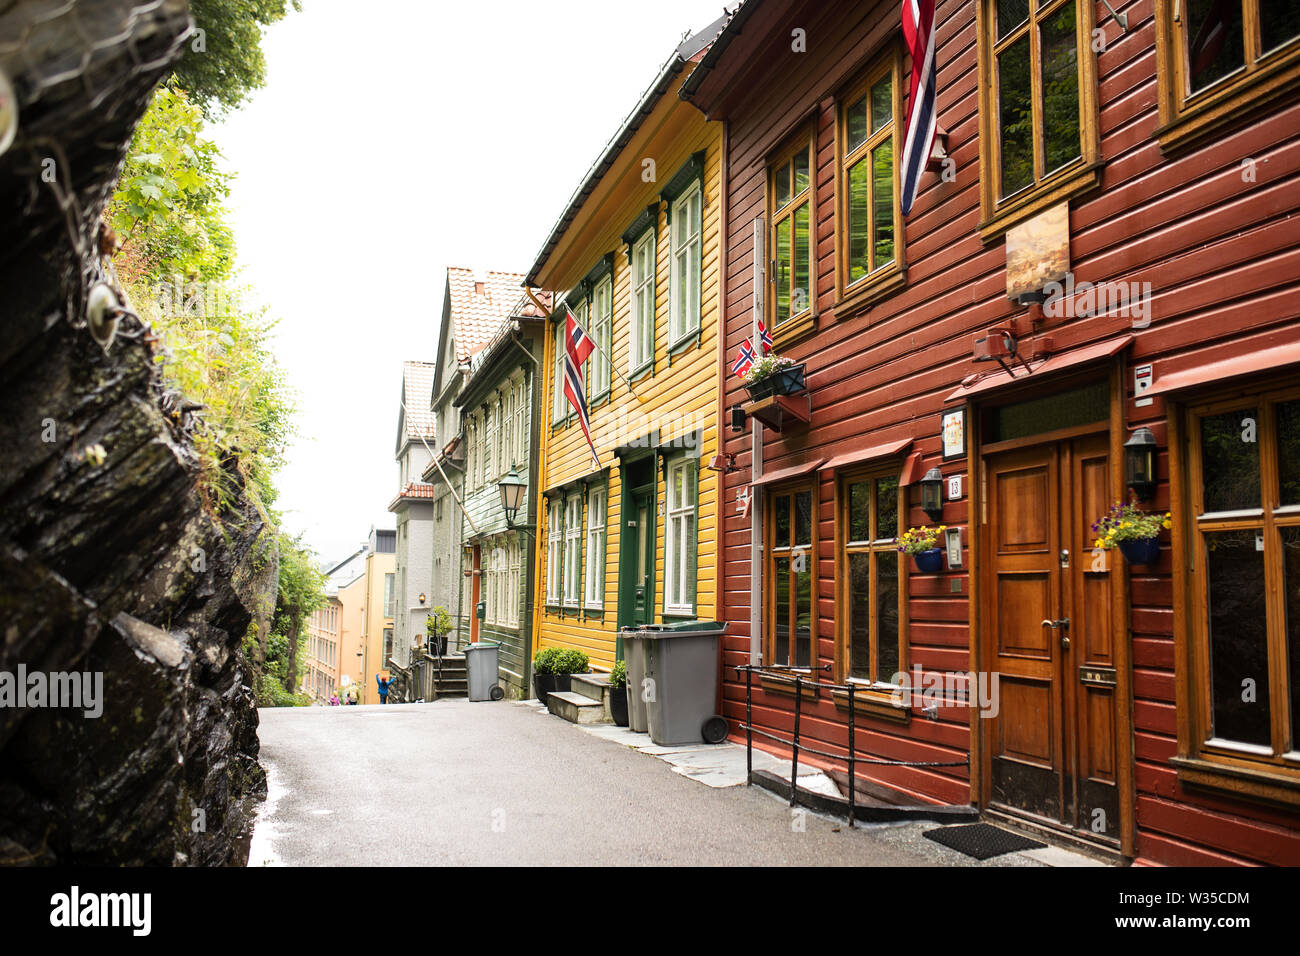 Traditionelle bunt bemalte Holzhäuser fliegen norwegische Flaggen in der Altstadt von Bergen, Norwegen. Stockfoto